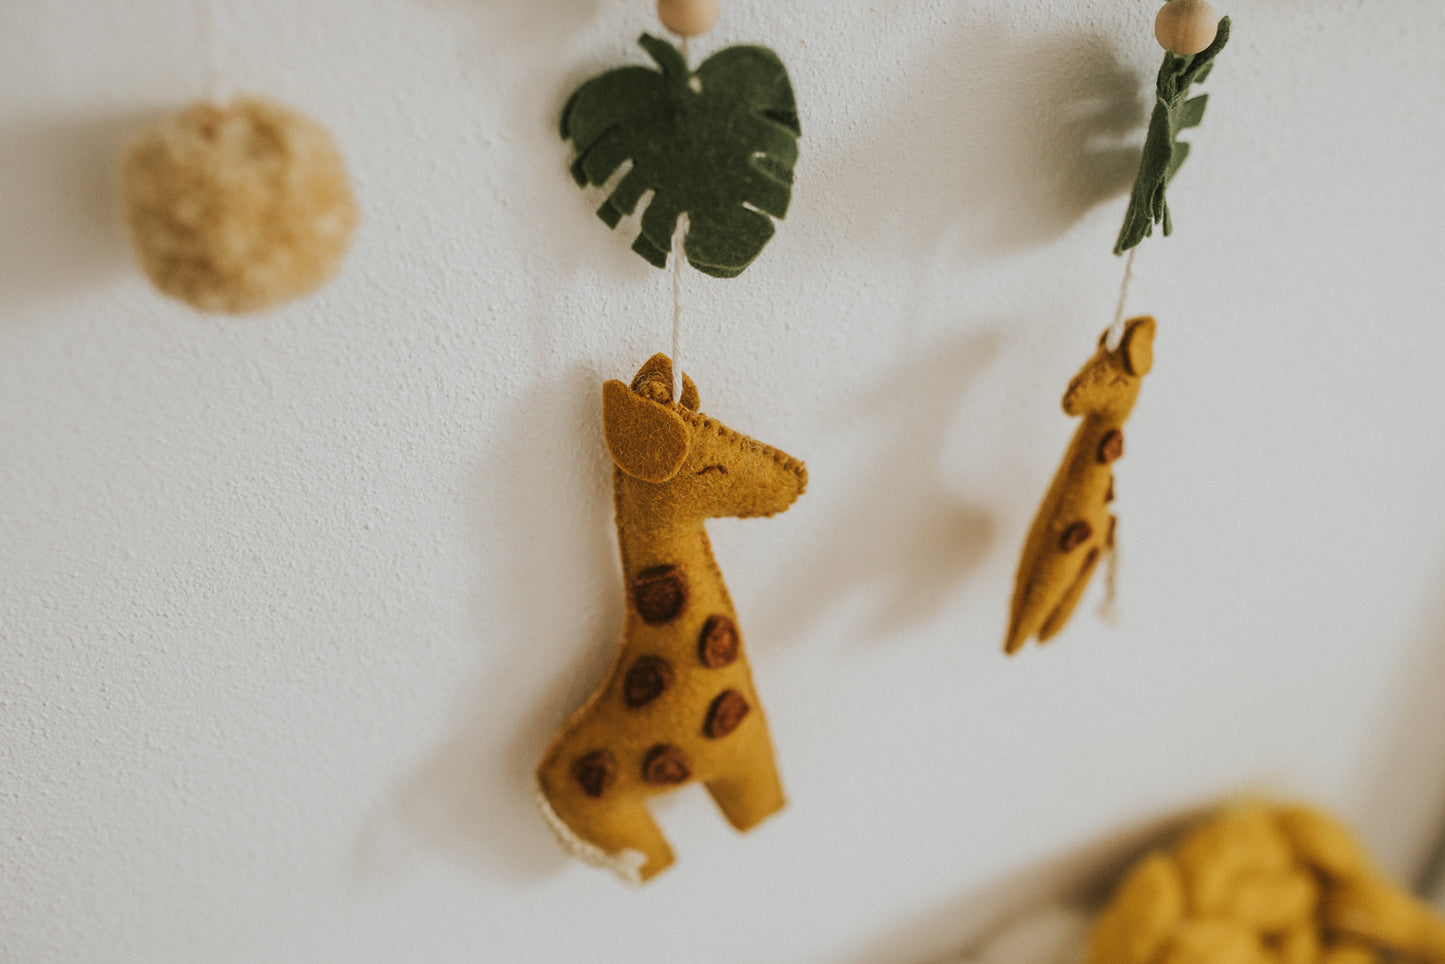 Wall hang " Moomy & giraffe baby"